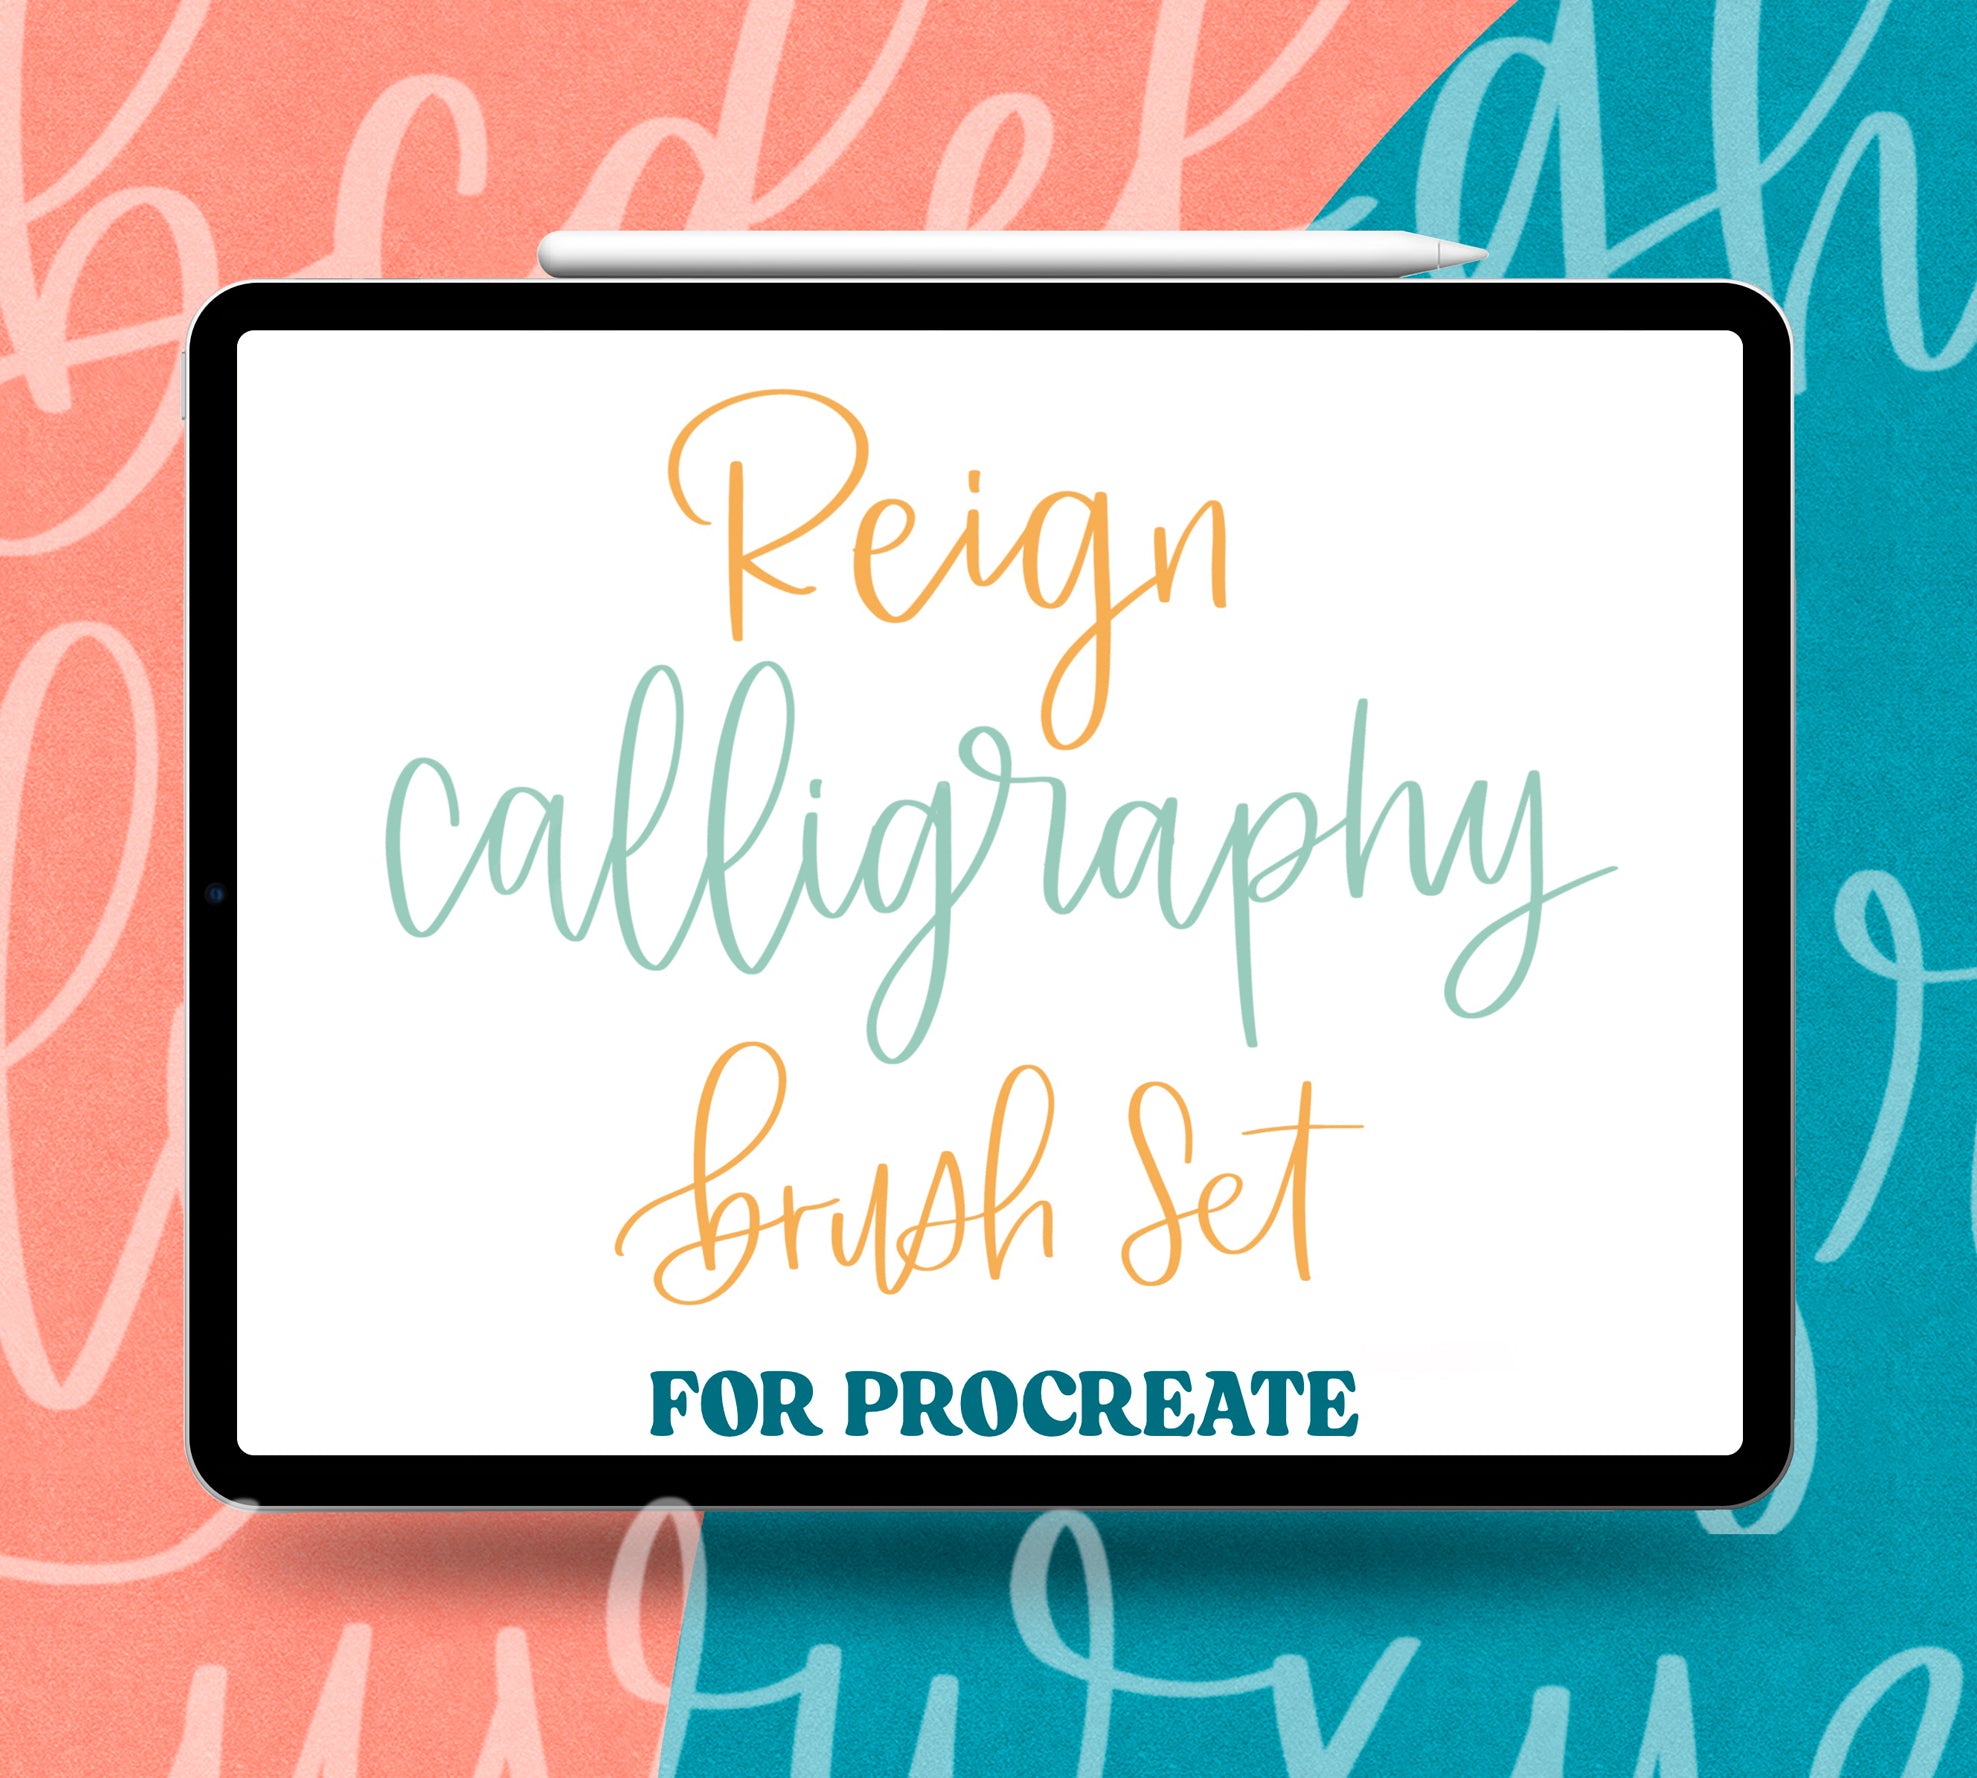 Calligraphy procreate brush set